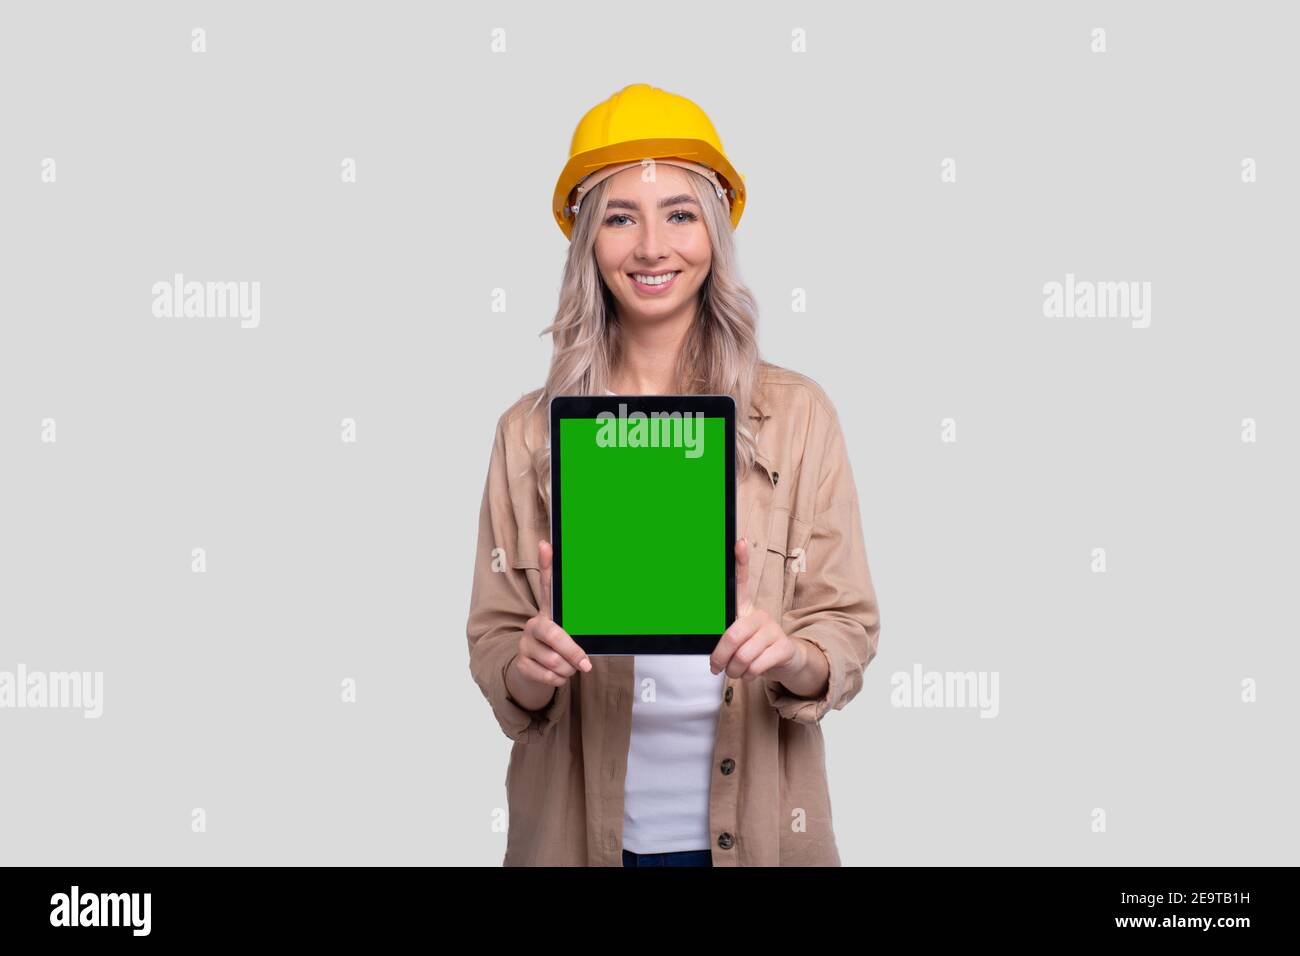 Mädchen Bauarbeiter Zeigt Tablet Green Screen Isoliert Stehen. Kommecial, Shopping, Werbung, Arbeit, Baukonzept Stockfoto